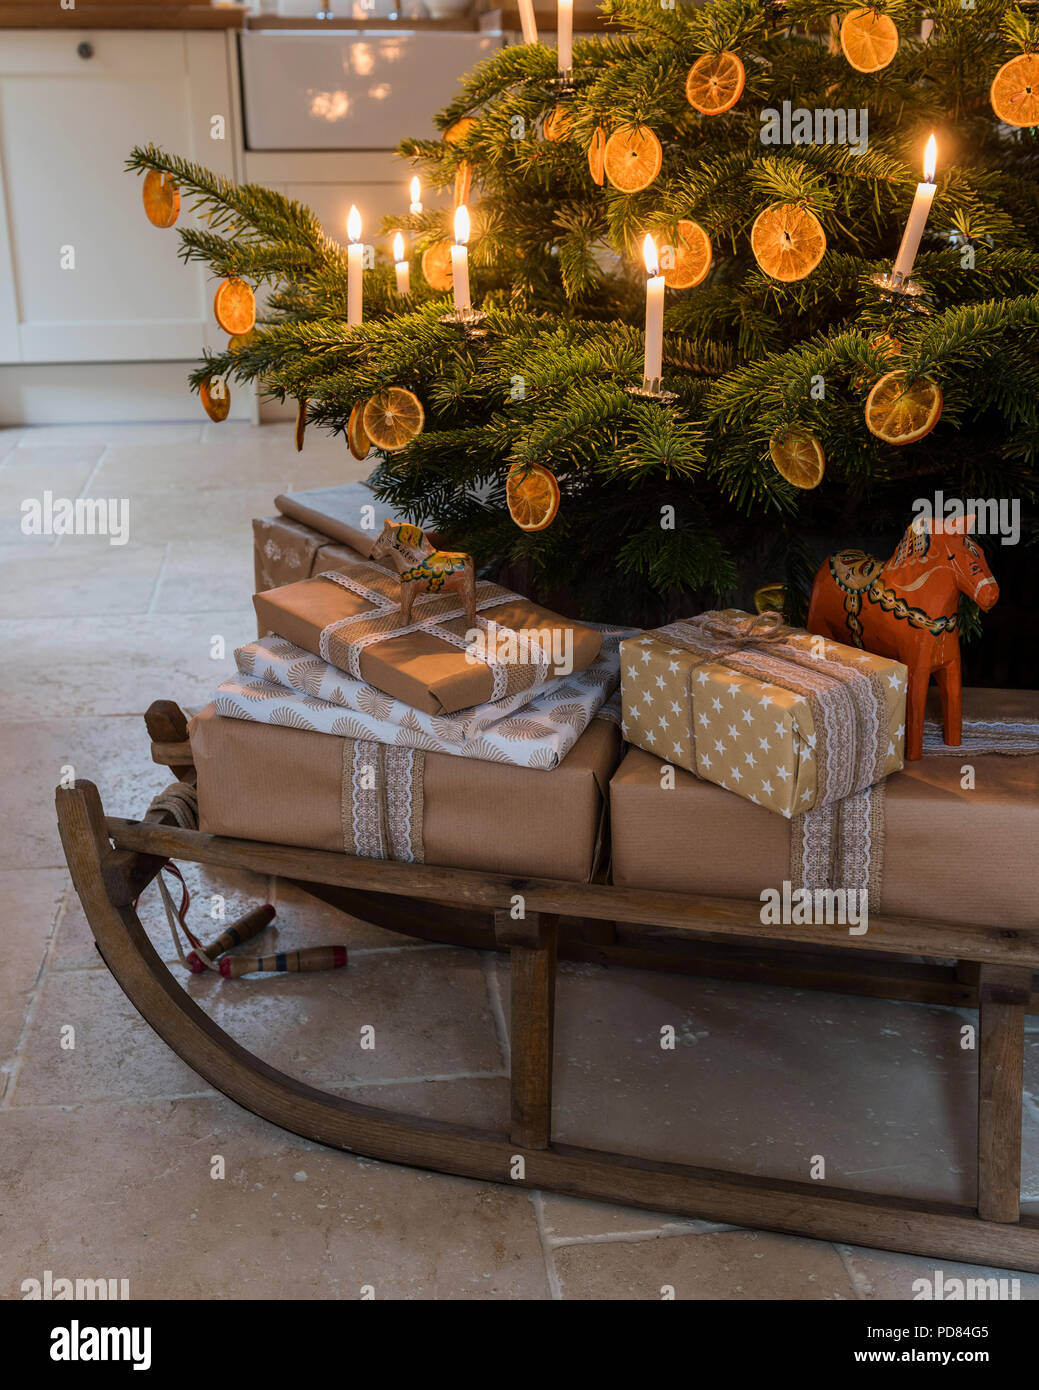 Wrapped presents sur un traîneau en bois en dessous de l'arbre de Noël aux chandelles Banque D'Images